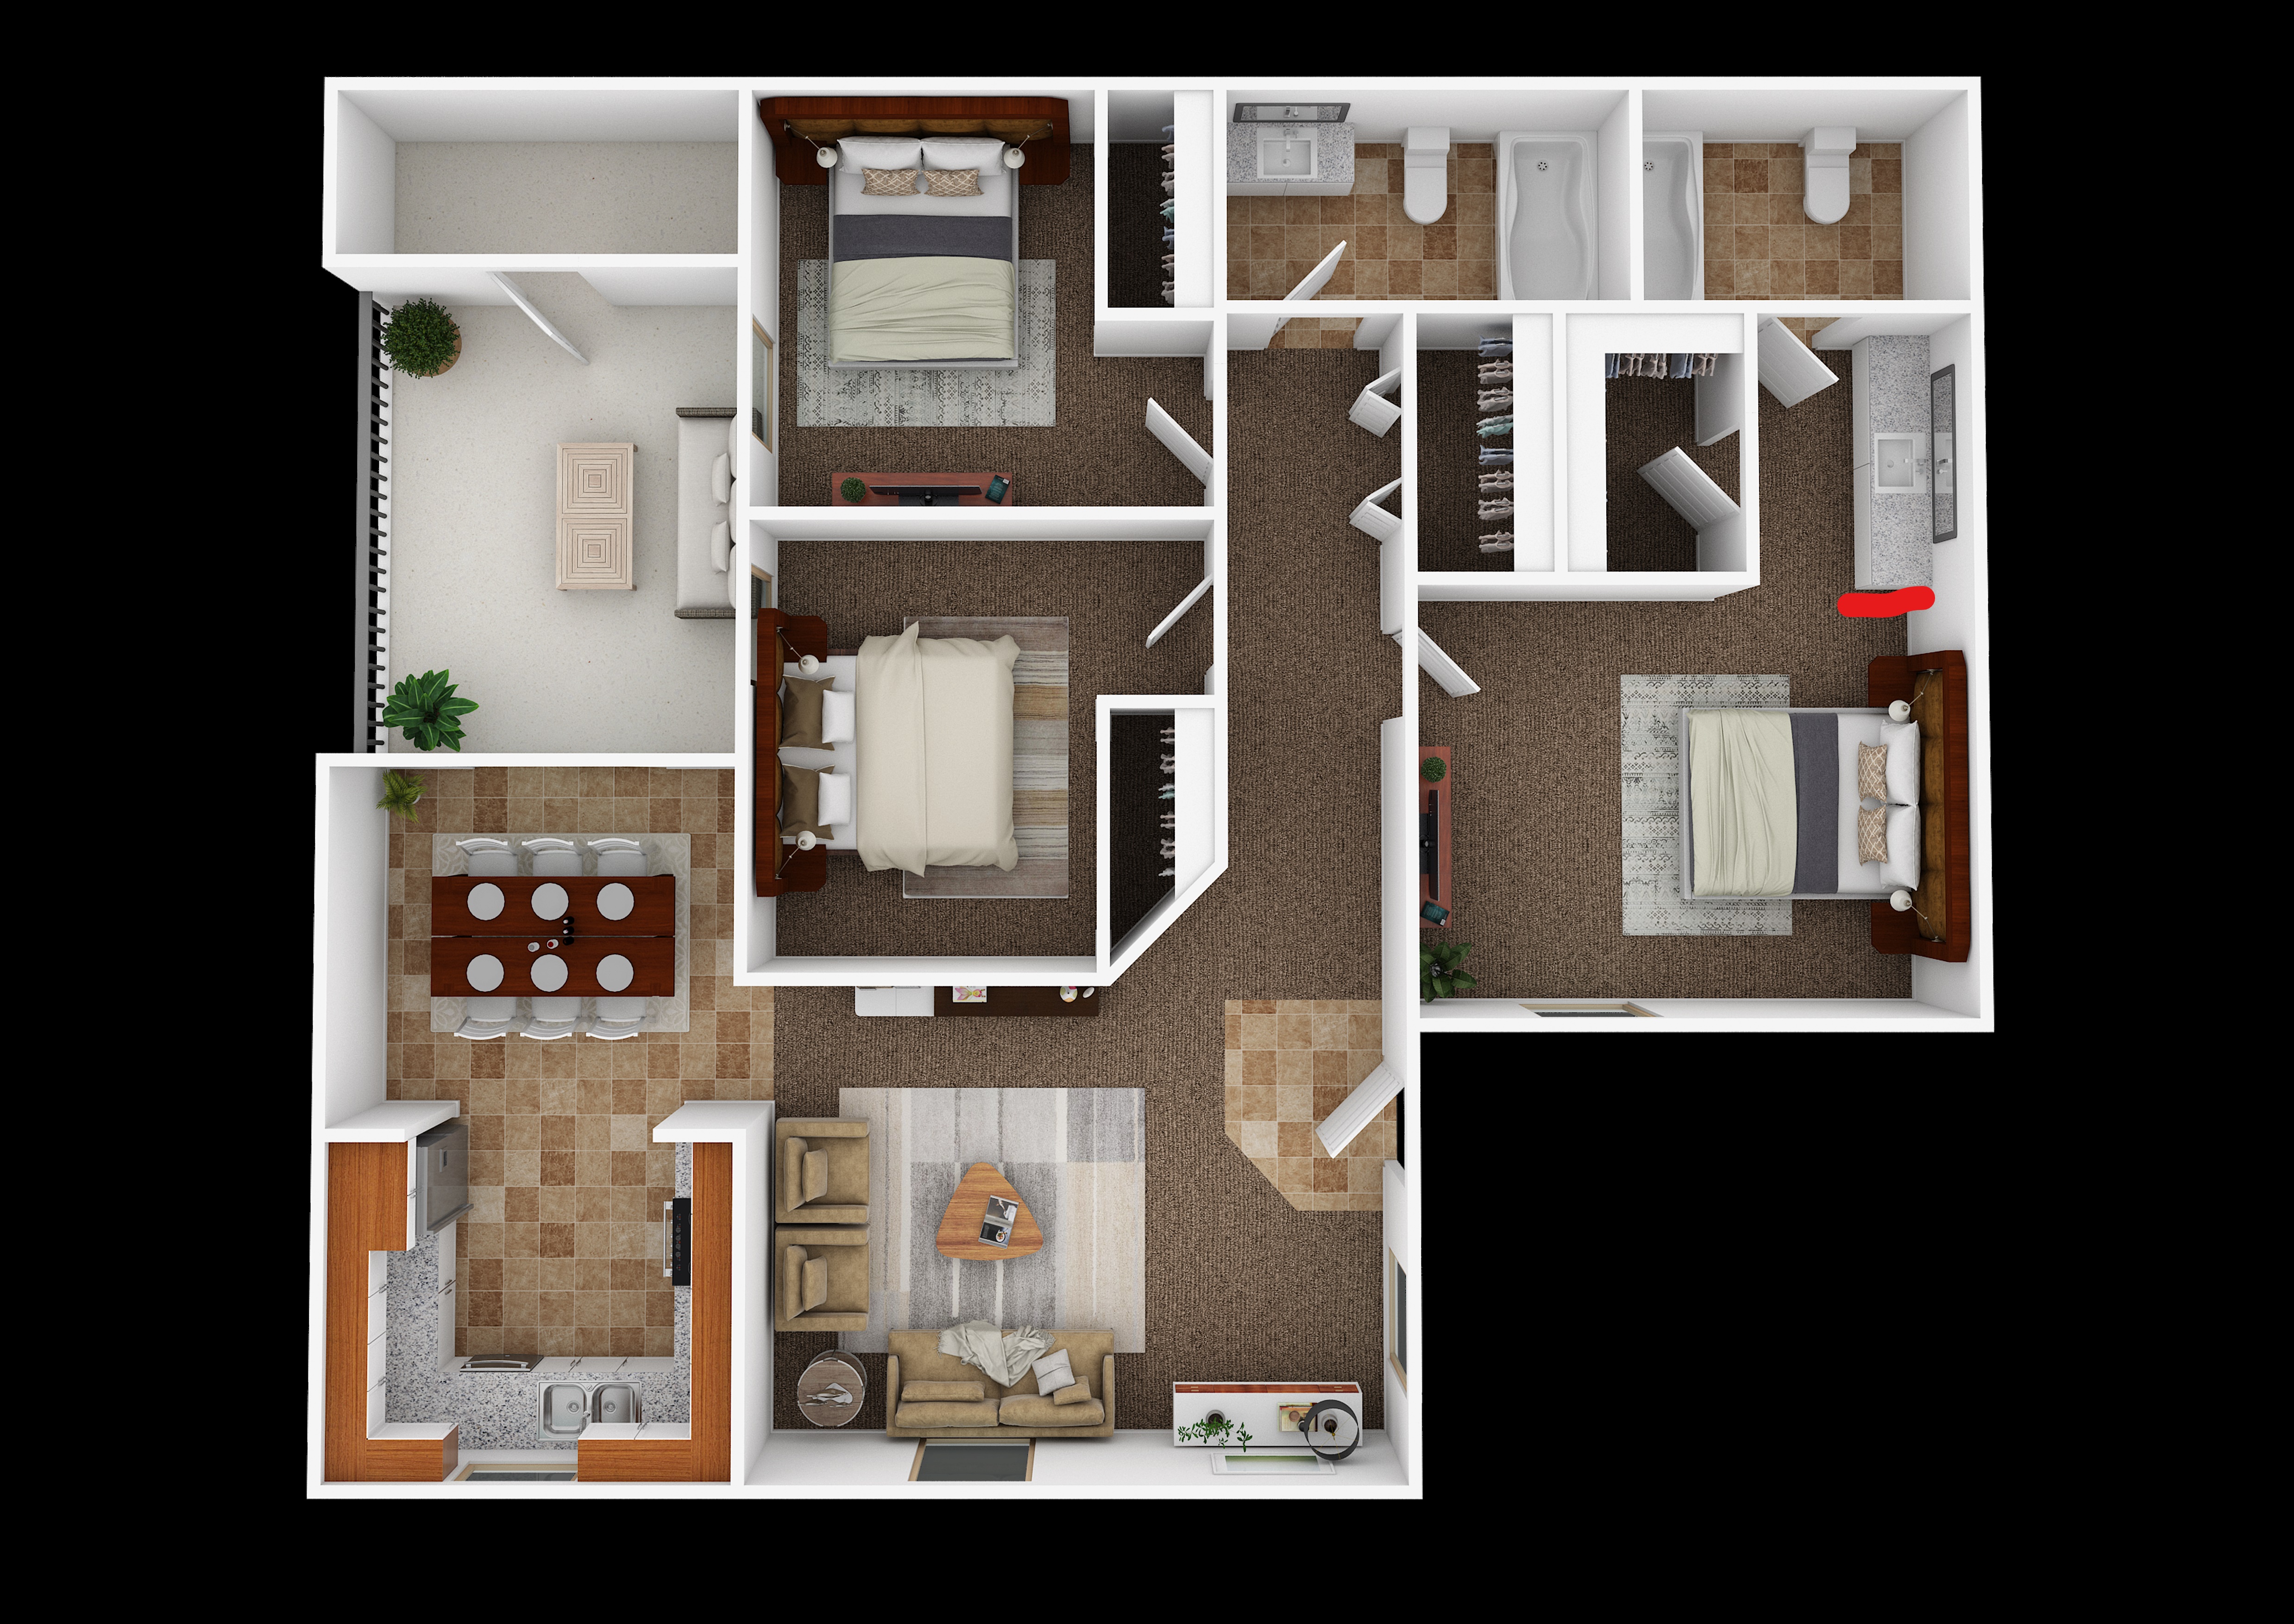 Sahuarita Mission Apartments 3 bedroom 2 bath floorplan